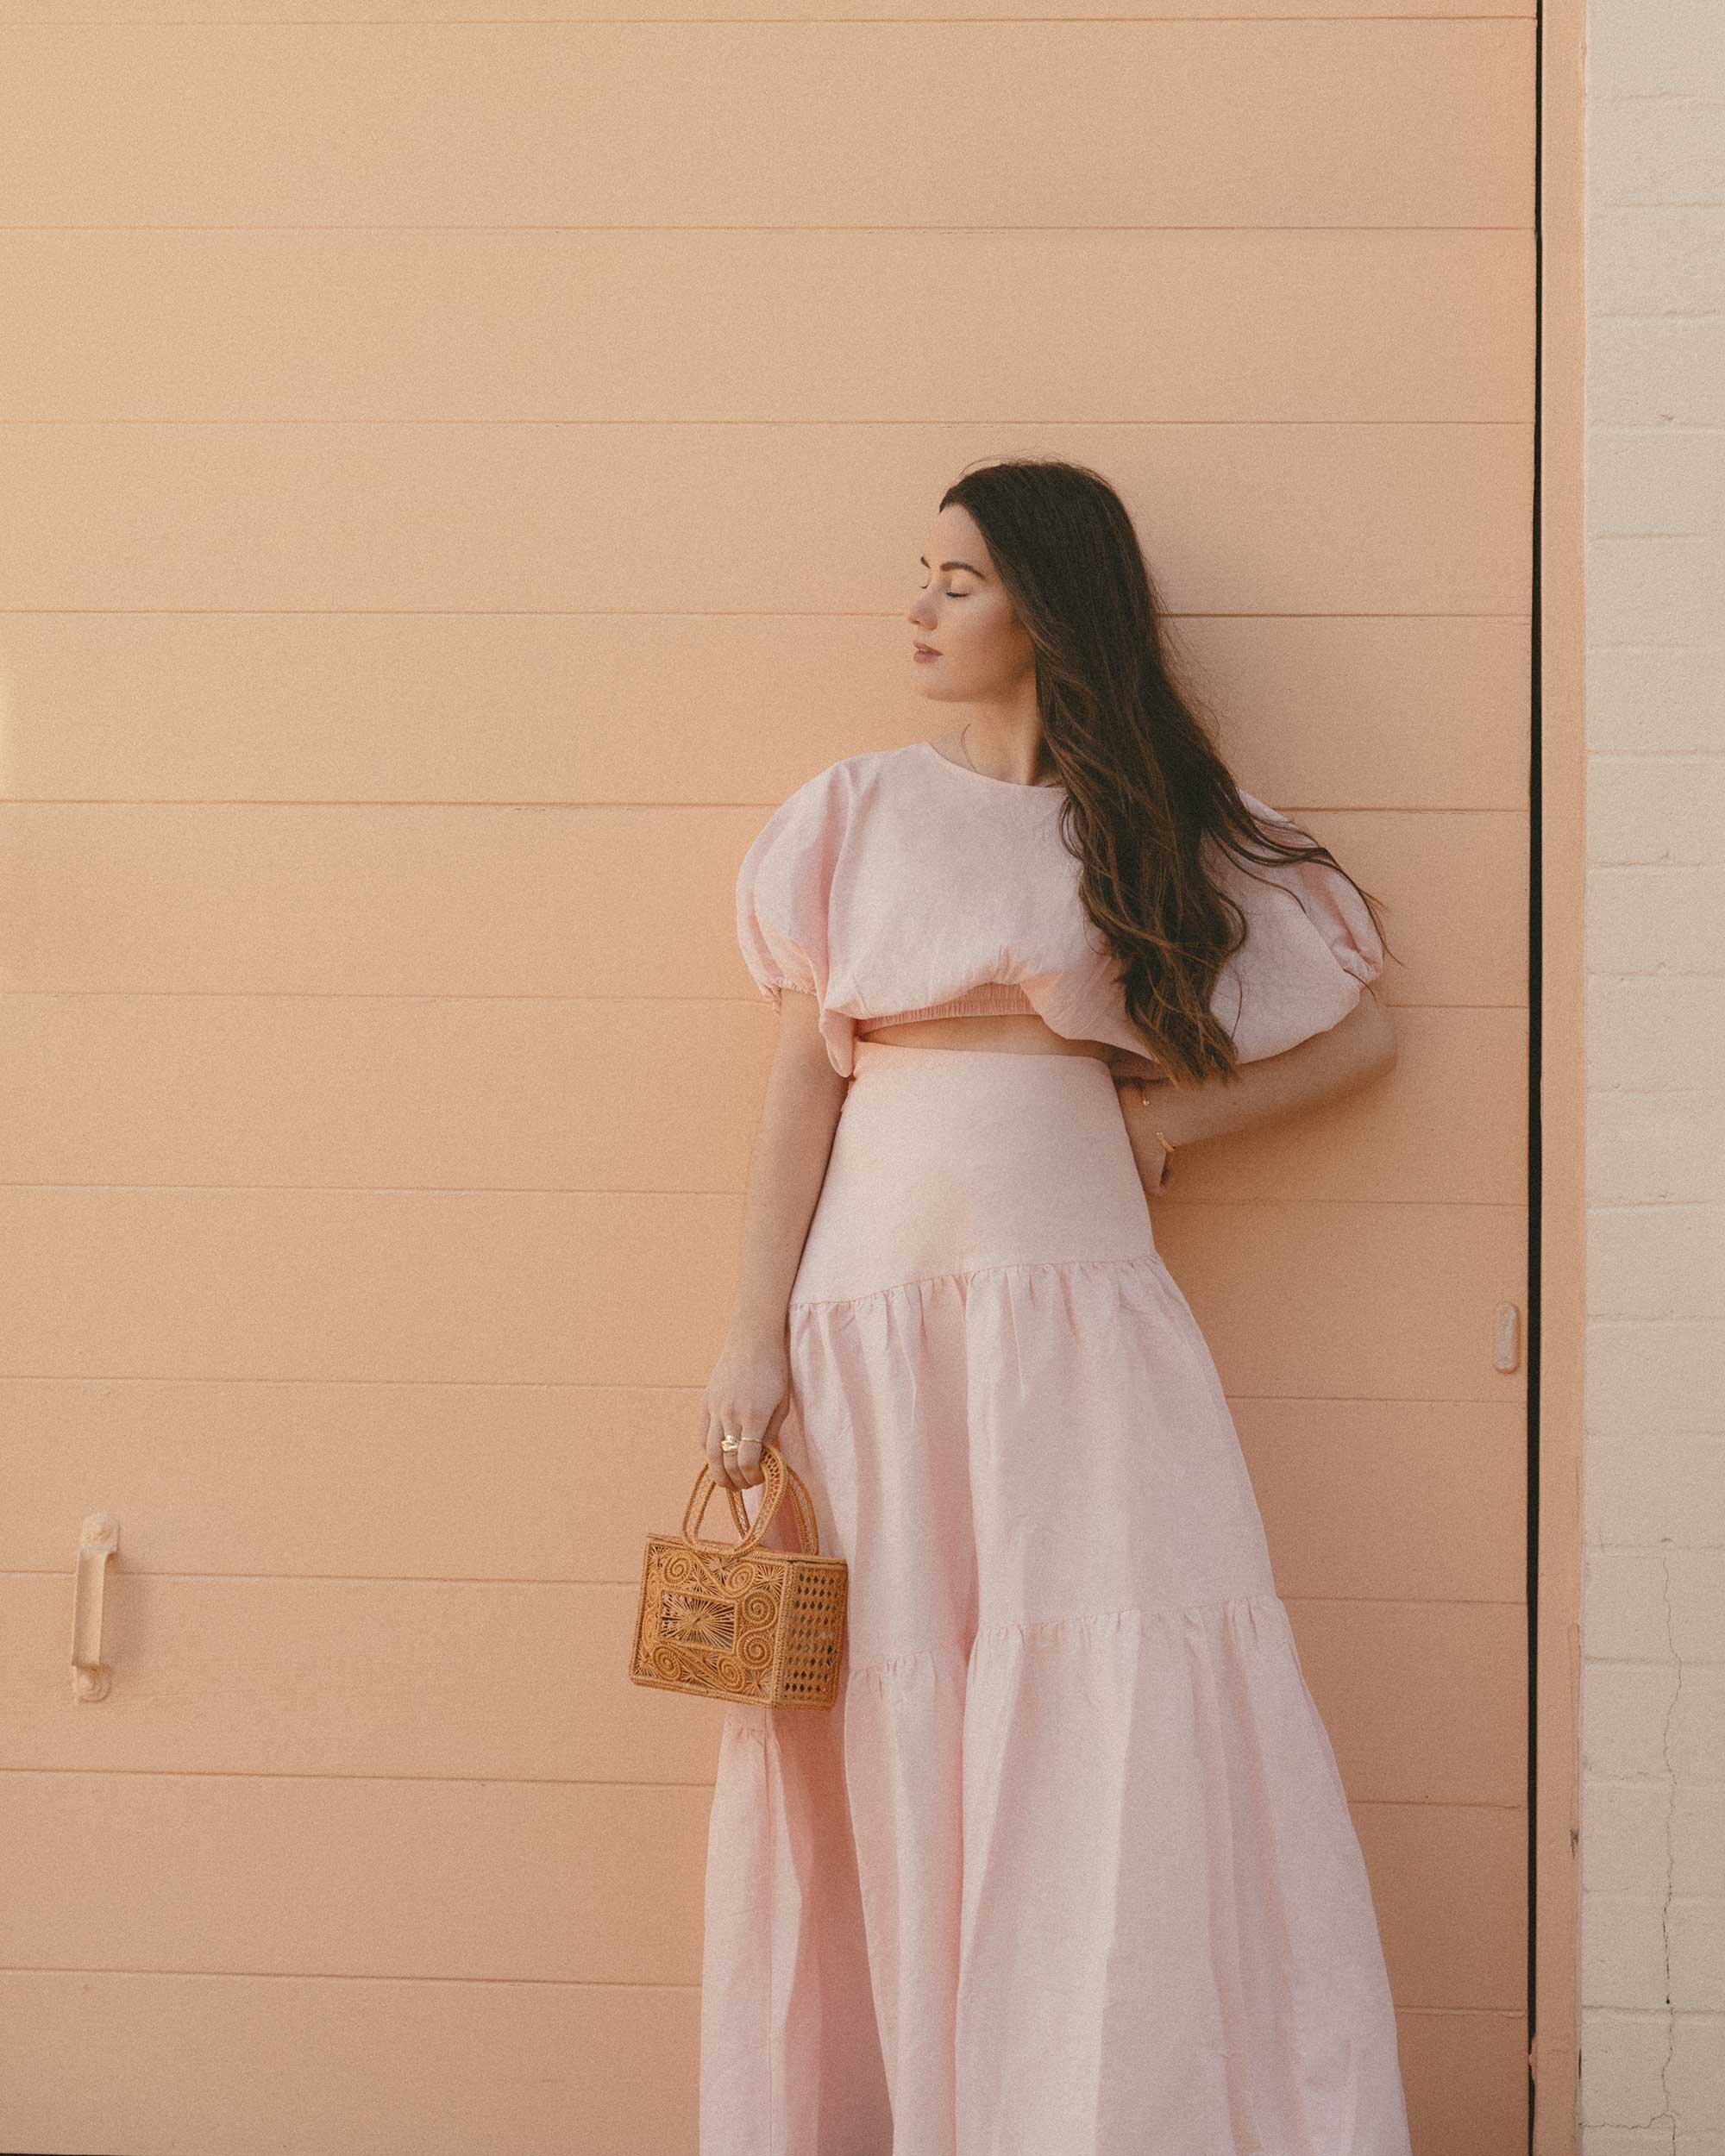 Cute Pink Spring Skirt Outfit Idea. Sarah Butler of @sarahchristine wearing  Mossman Daybreak Pink Linen Crop Top and Pink Linen Asymmetrical Tiered Skirt in Newport Beach, California - 5.jpg